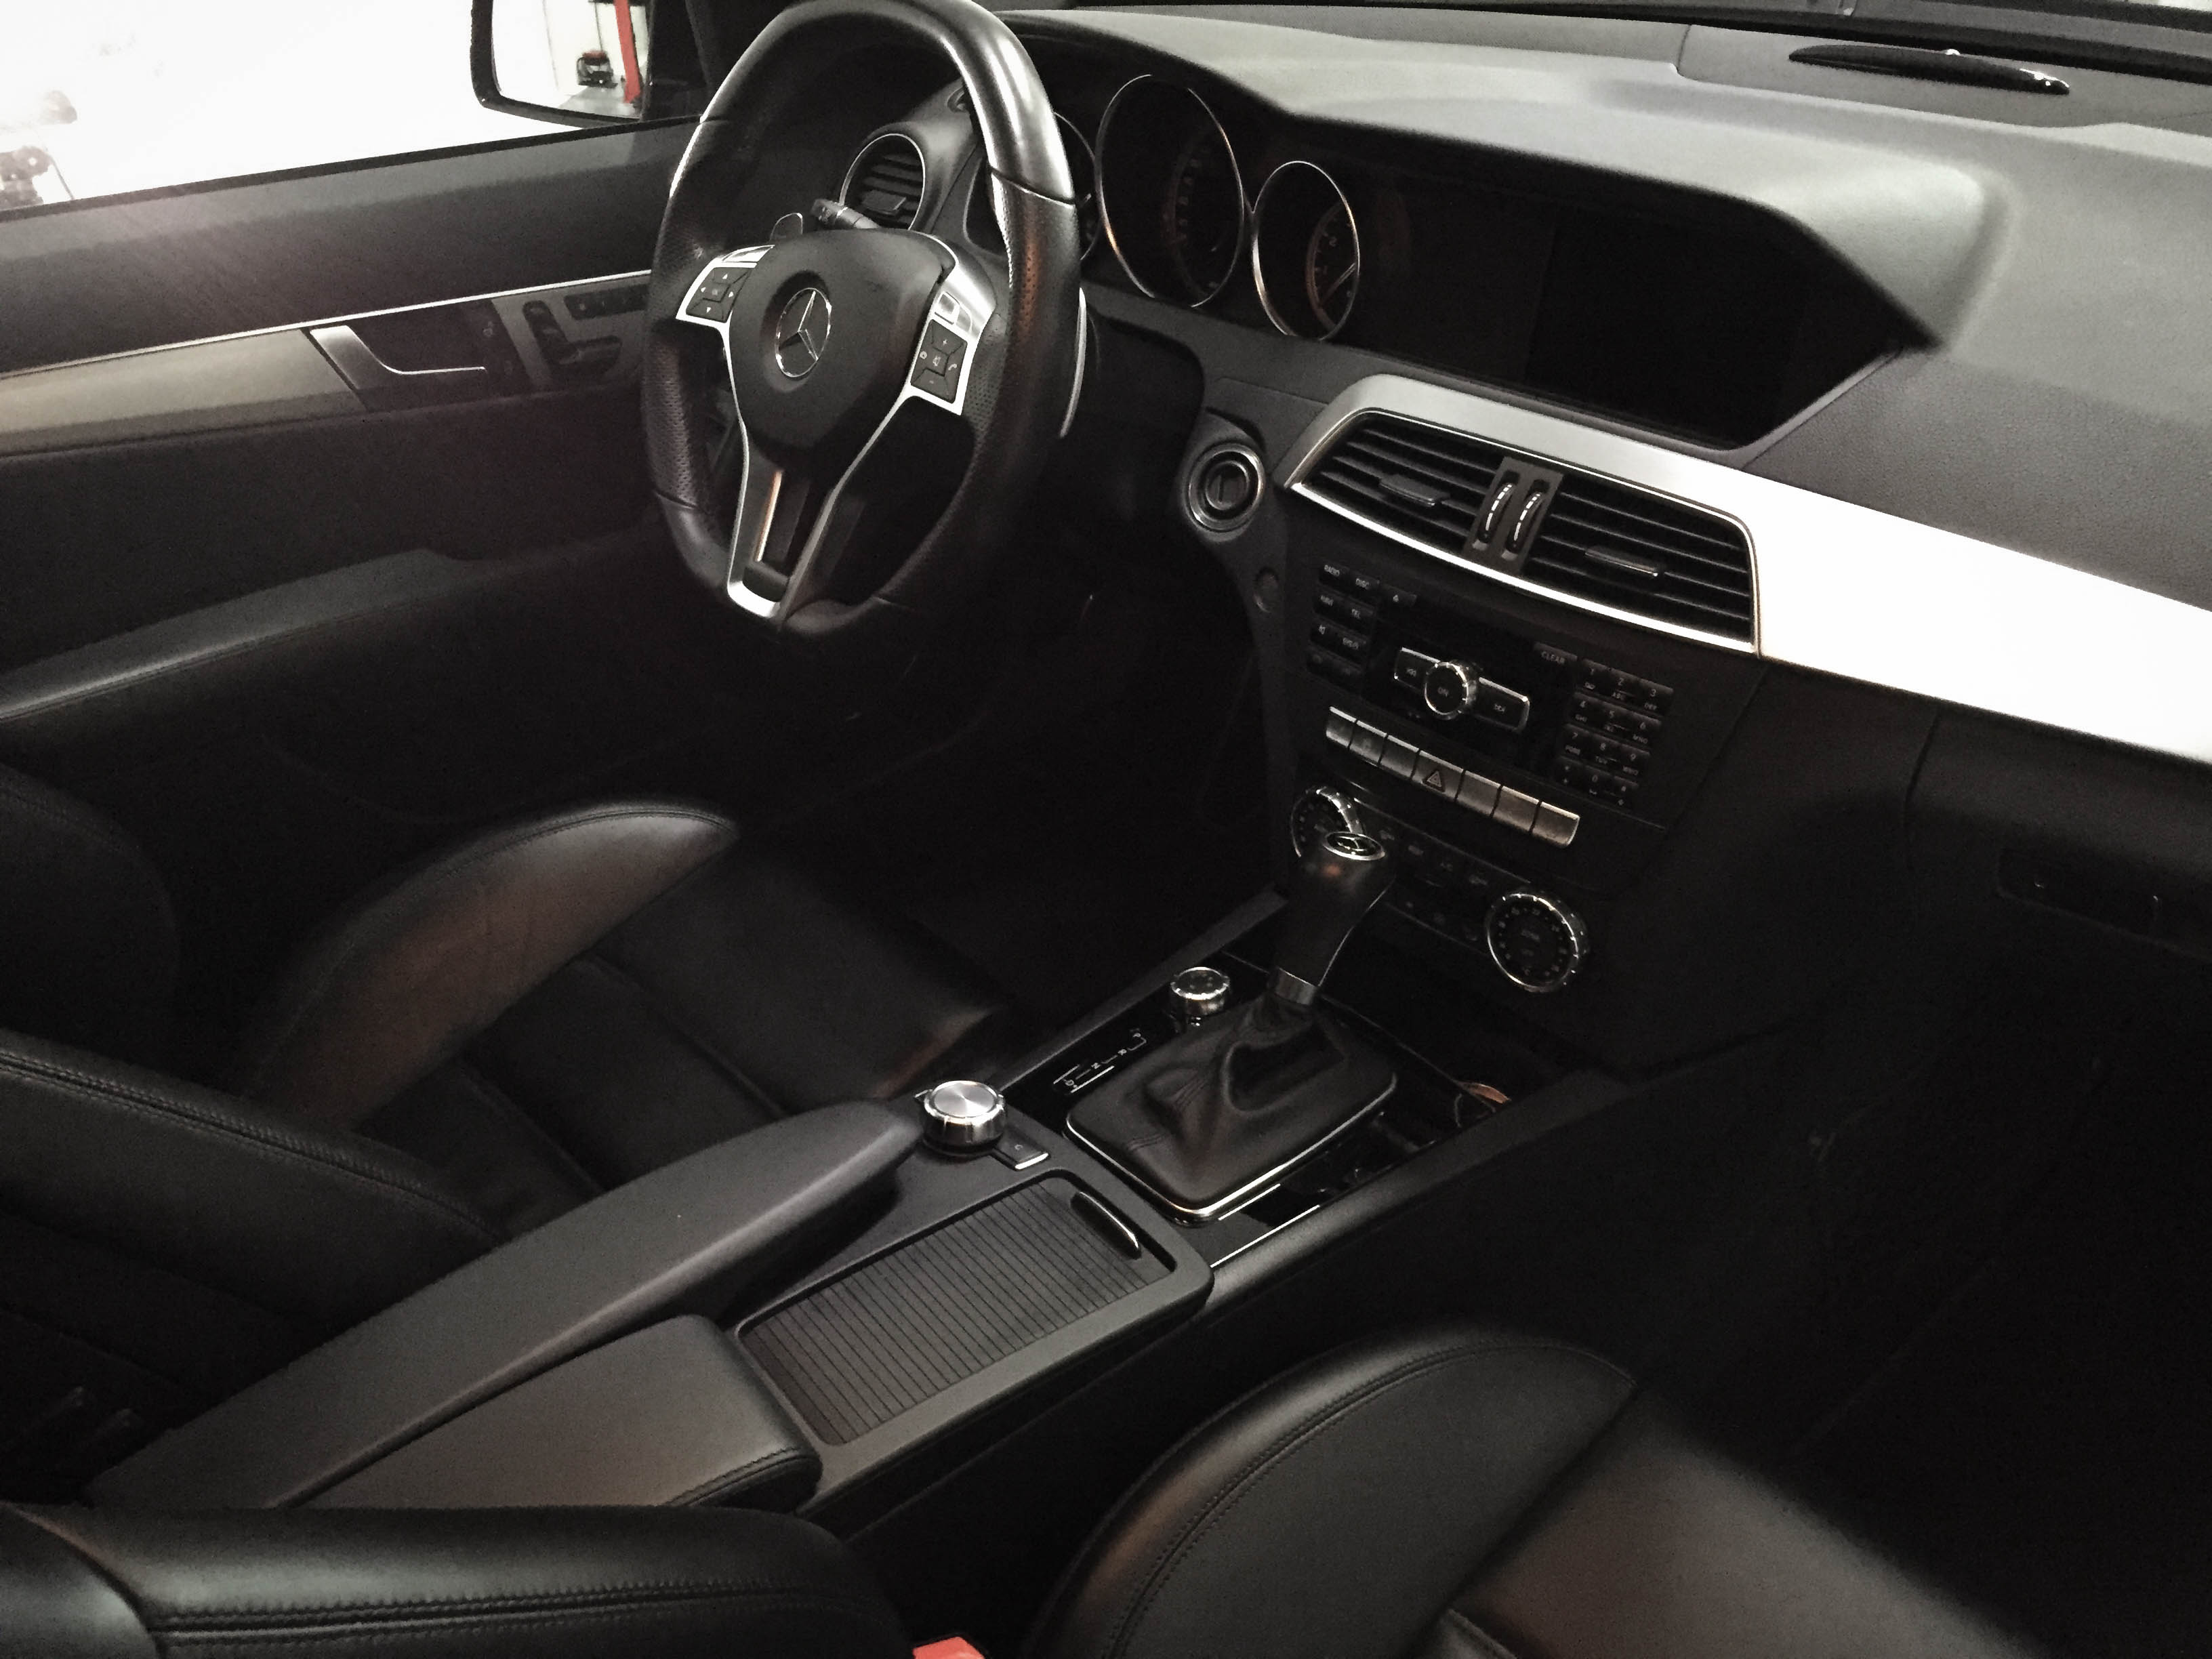 Mercedes C63 Touring – Interior